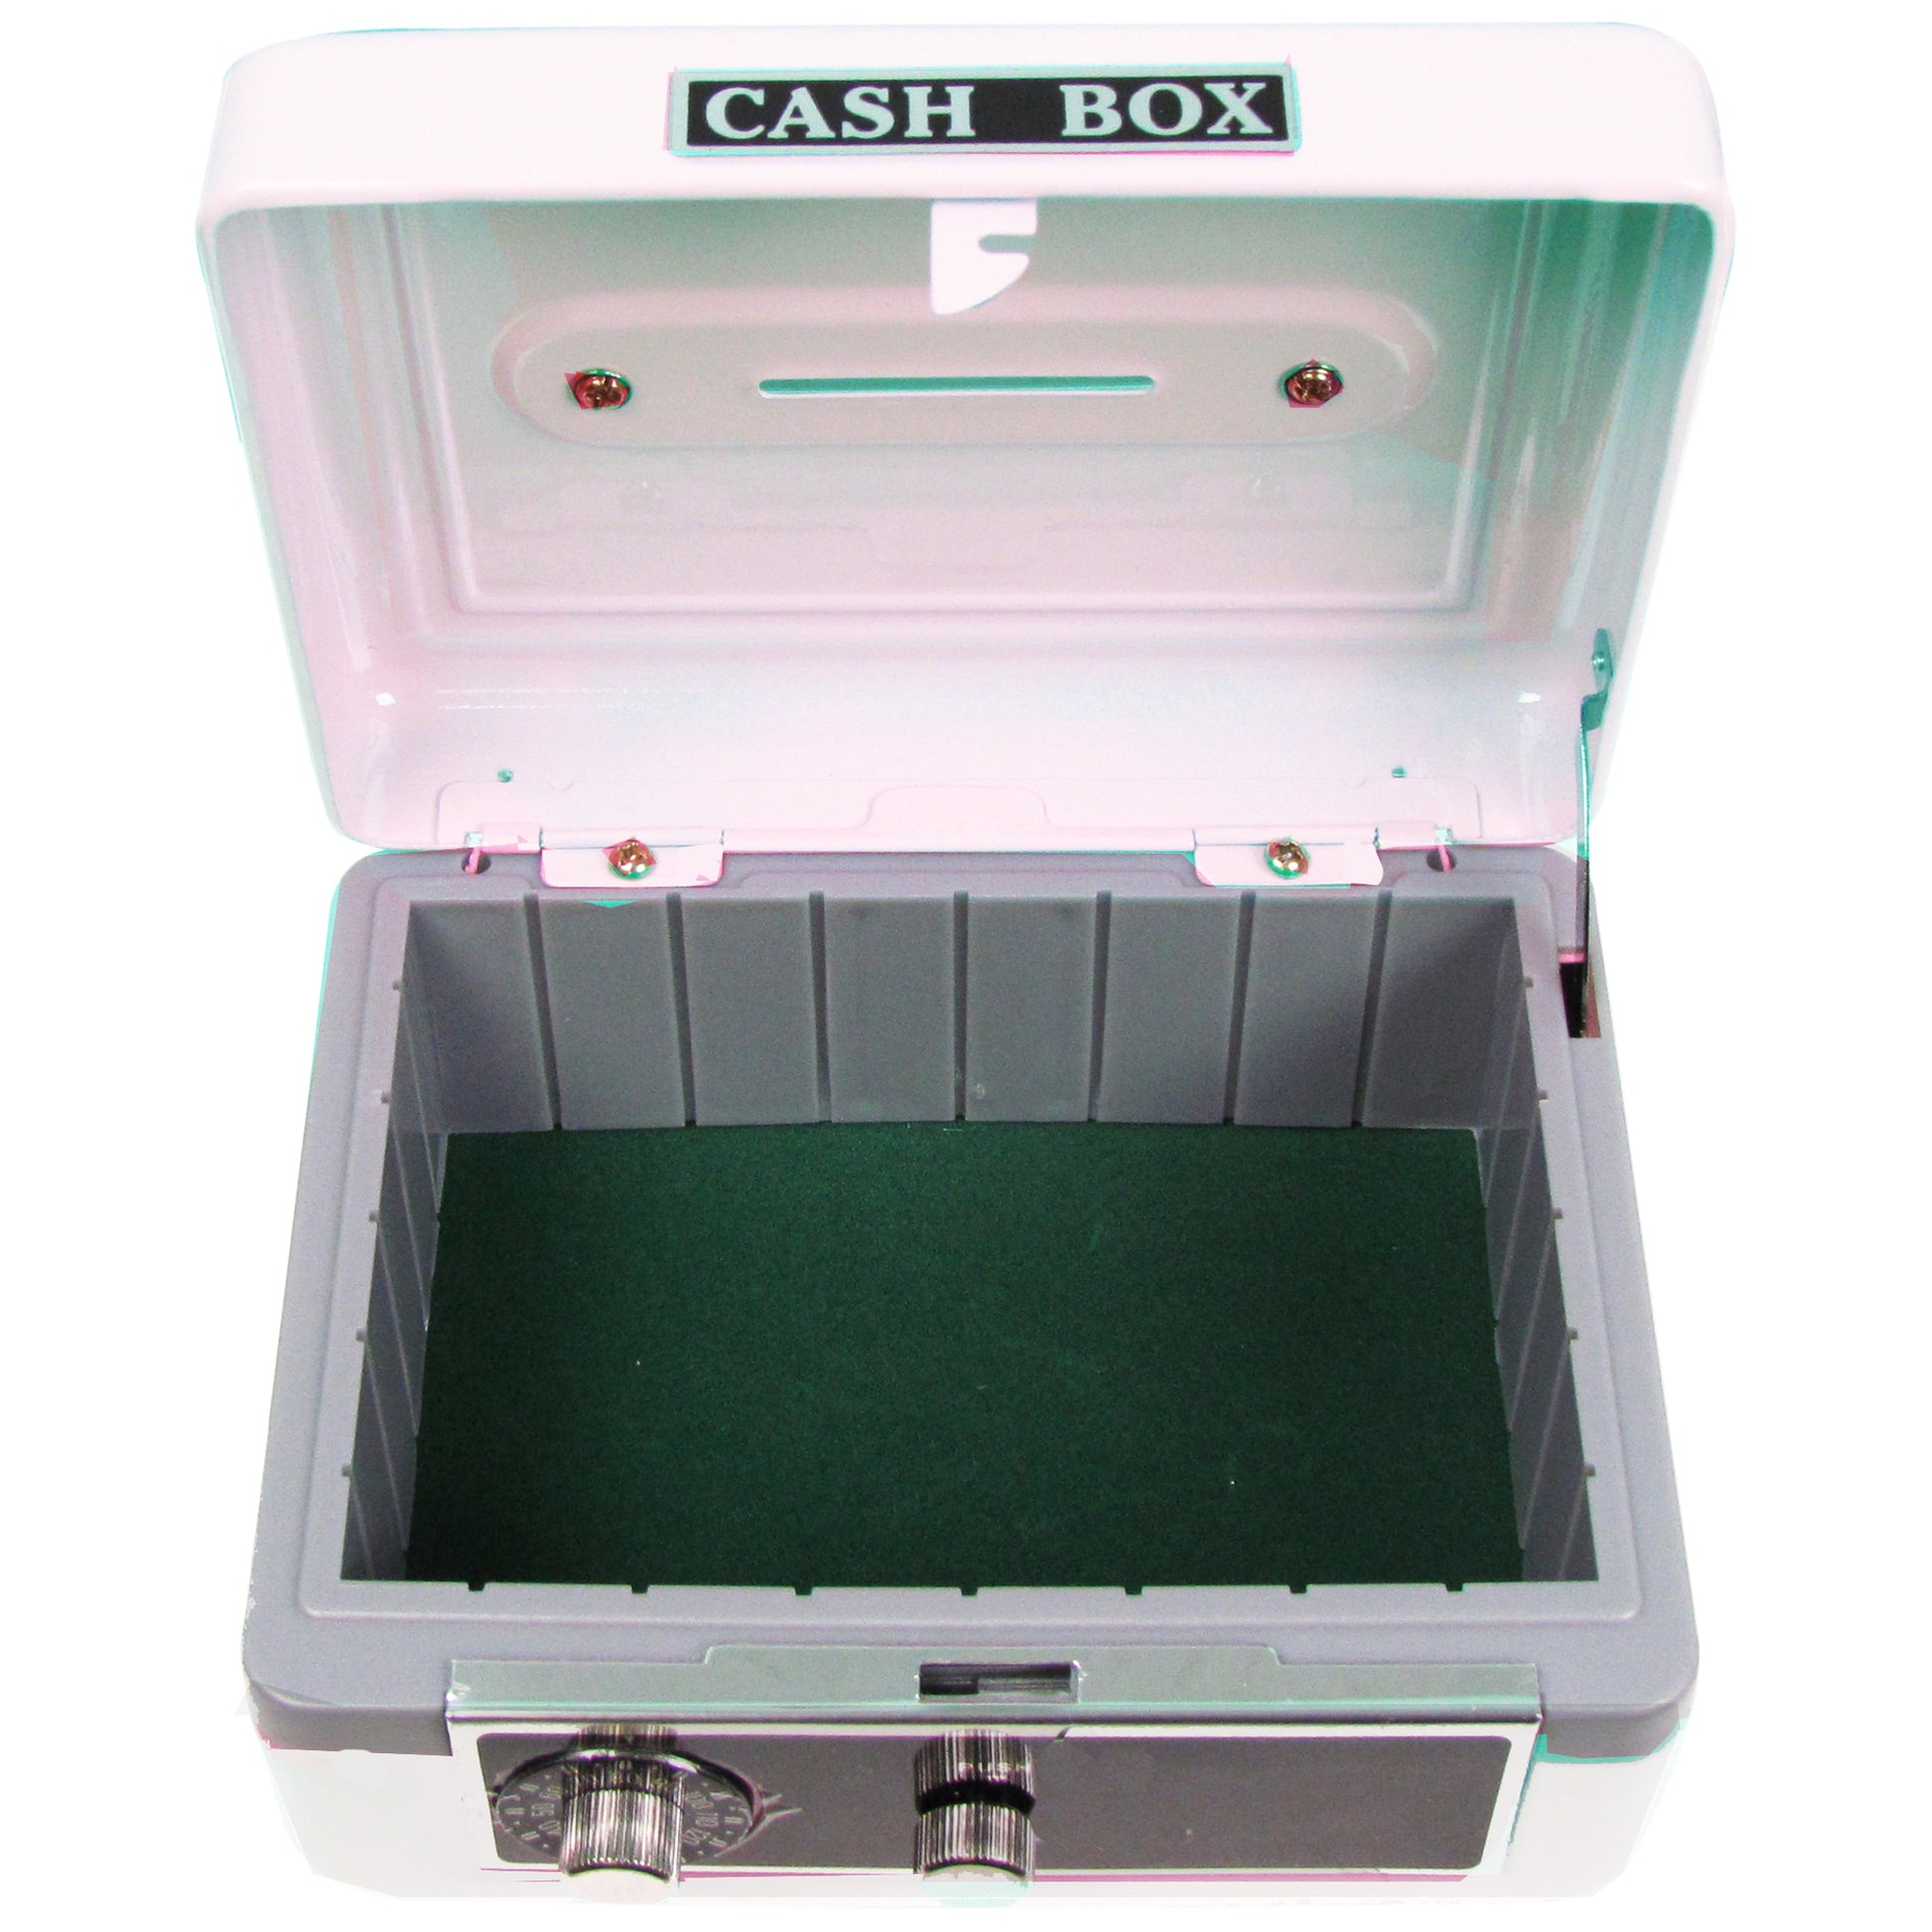 Personalized White Cash Box with Swim design